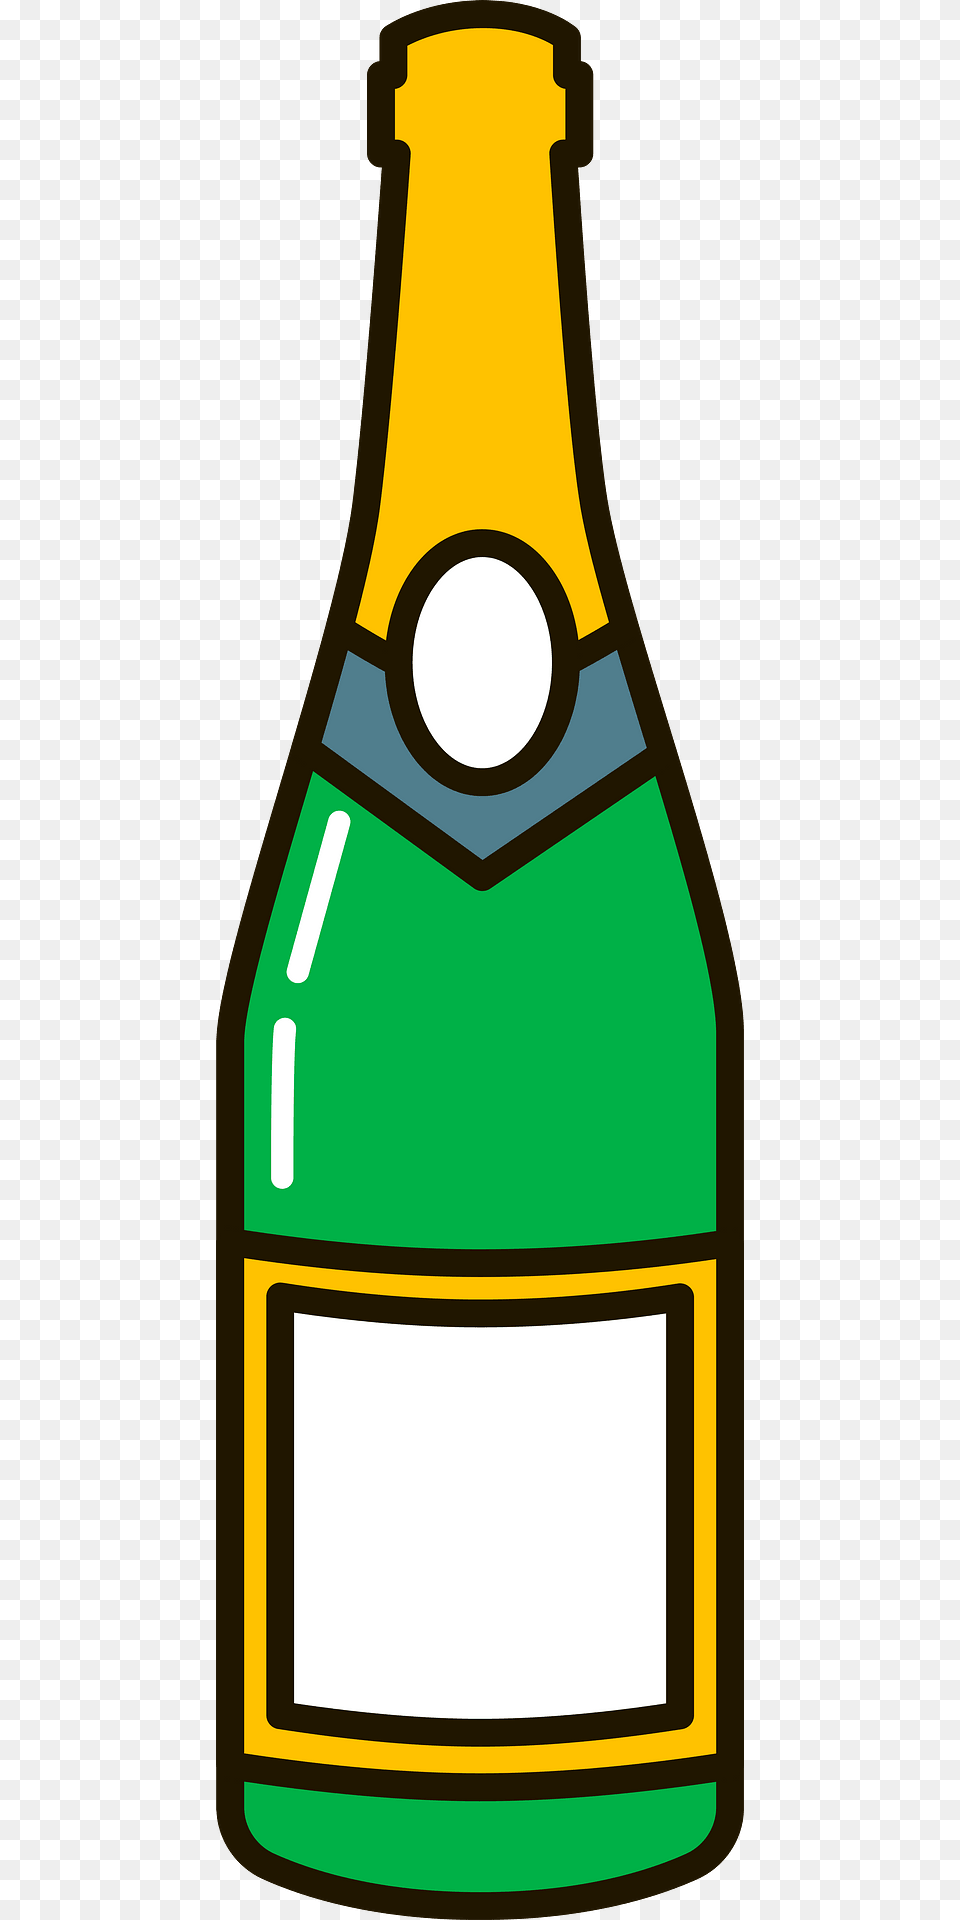 Champagne Bottle Clipart, Alcohol, Beer, Beverage, Beer Bottle Png